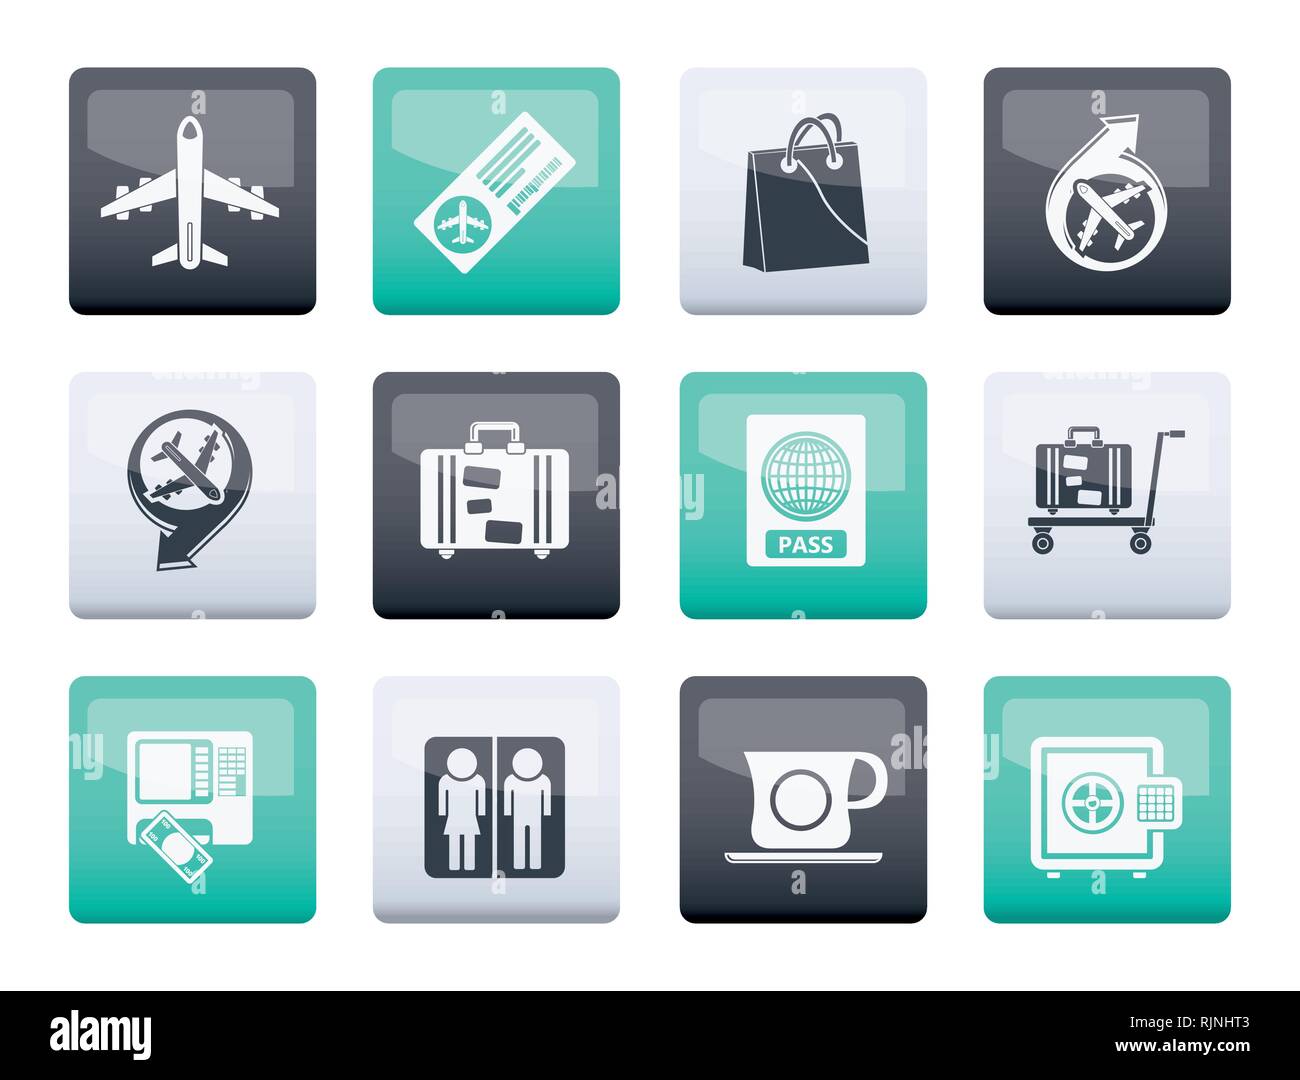 Flughafen, Reisen und Transport icons 1 über Farbe Hintergrund - Vektor Icon Set Stock Vektor